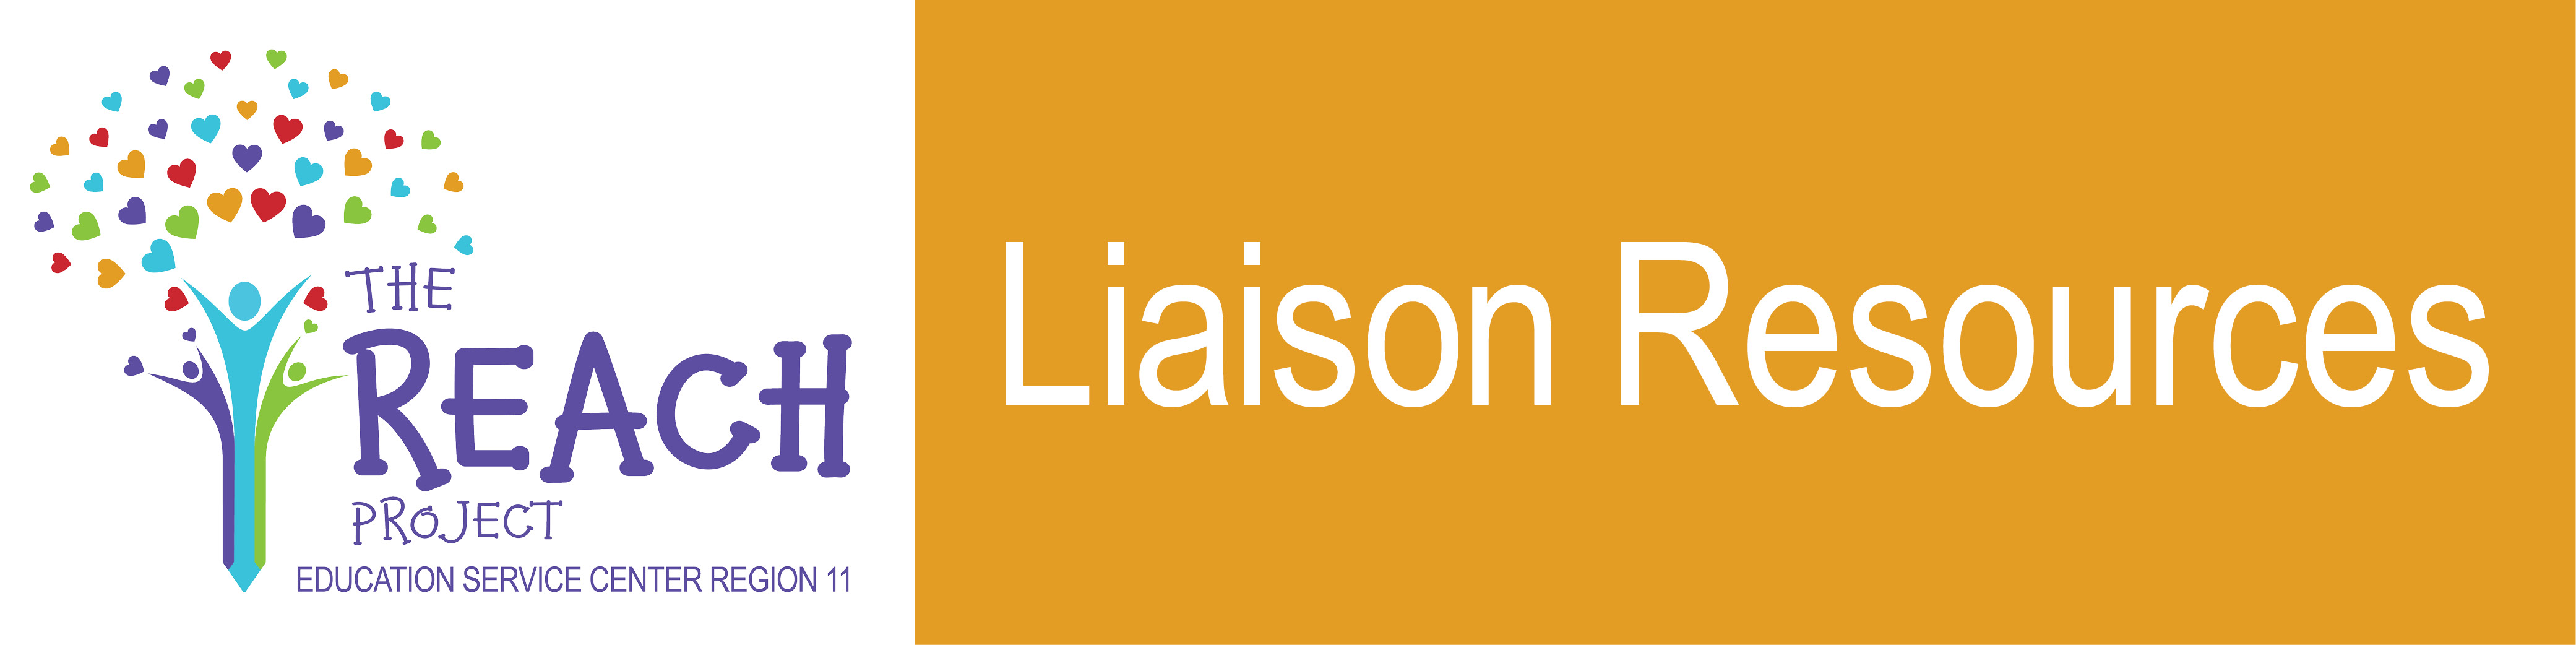 Liaison Resources